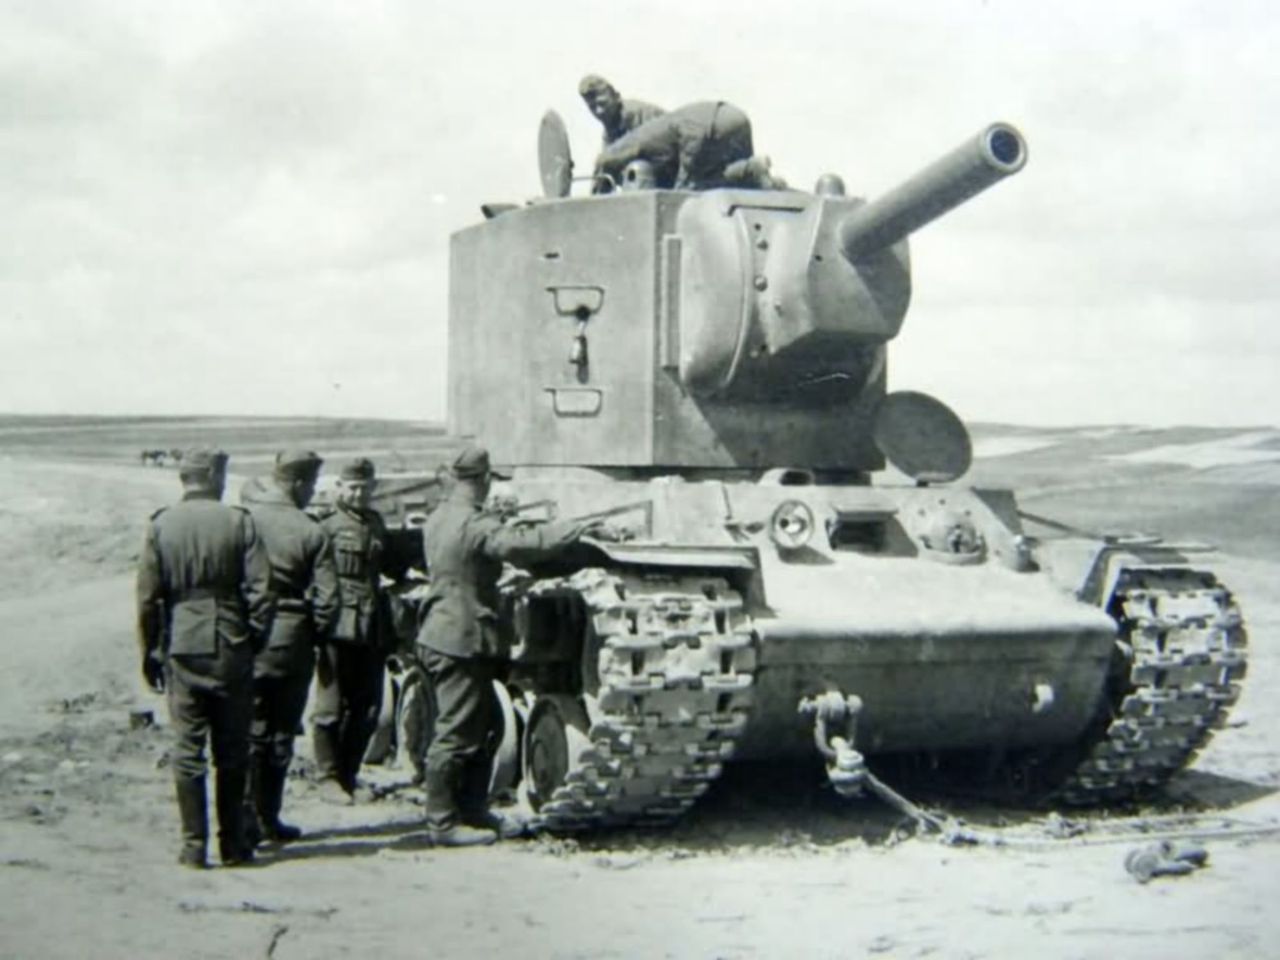 Ciężki czołg KW-2 - radziecka twierdza na gąsienicach. Niemcy drżeli na jej widok - Czołg ciężki KW-2